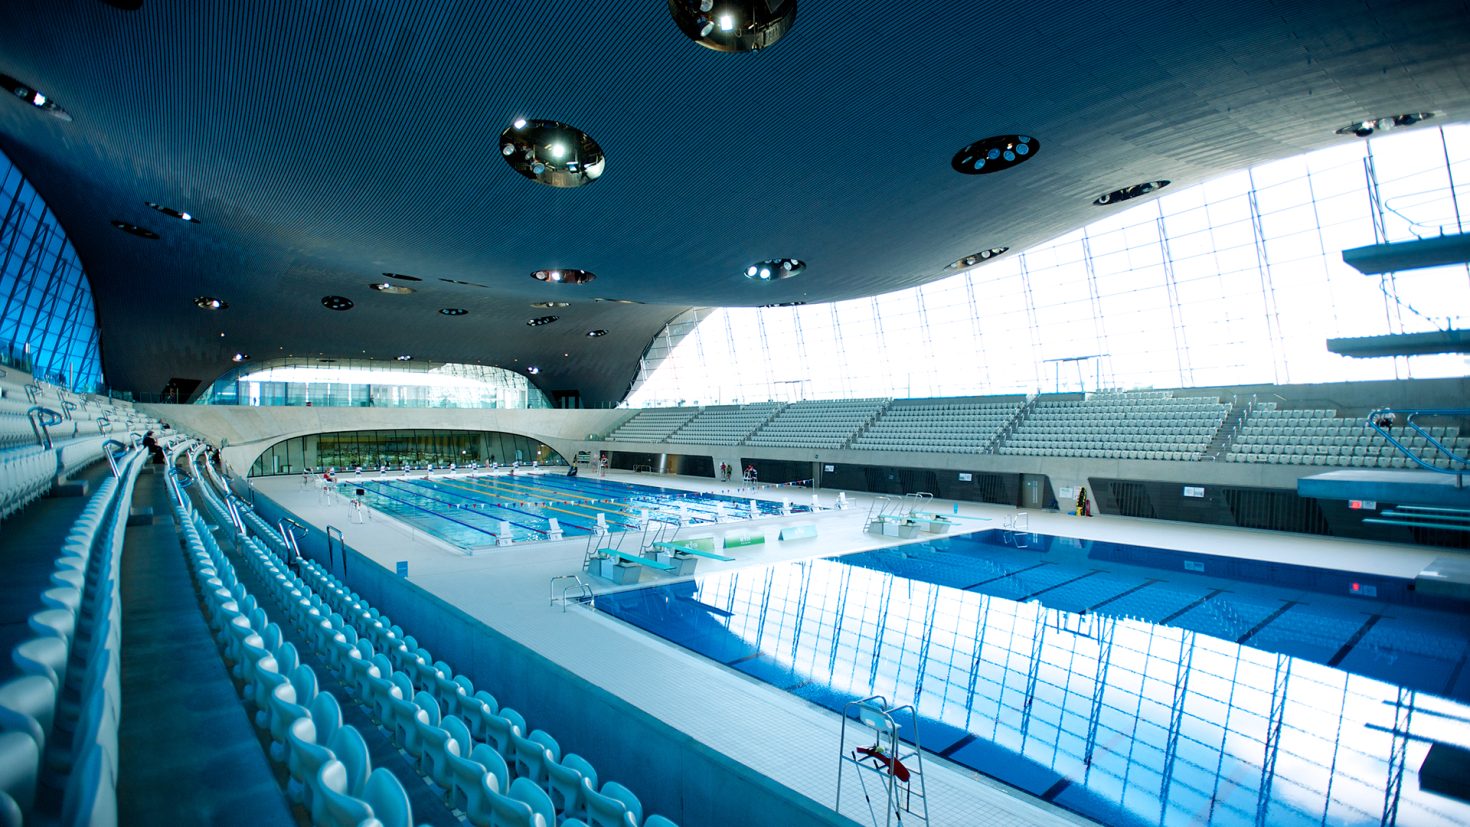 London Aquatic Centre